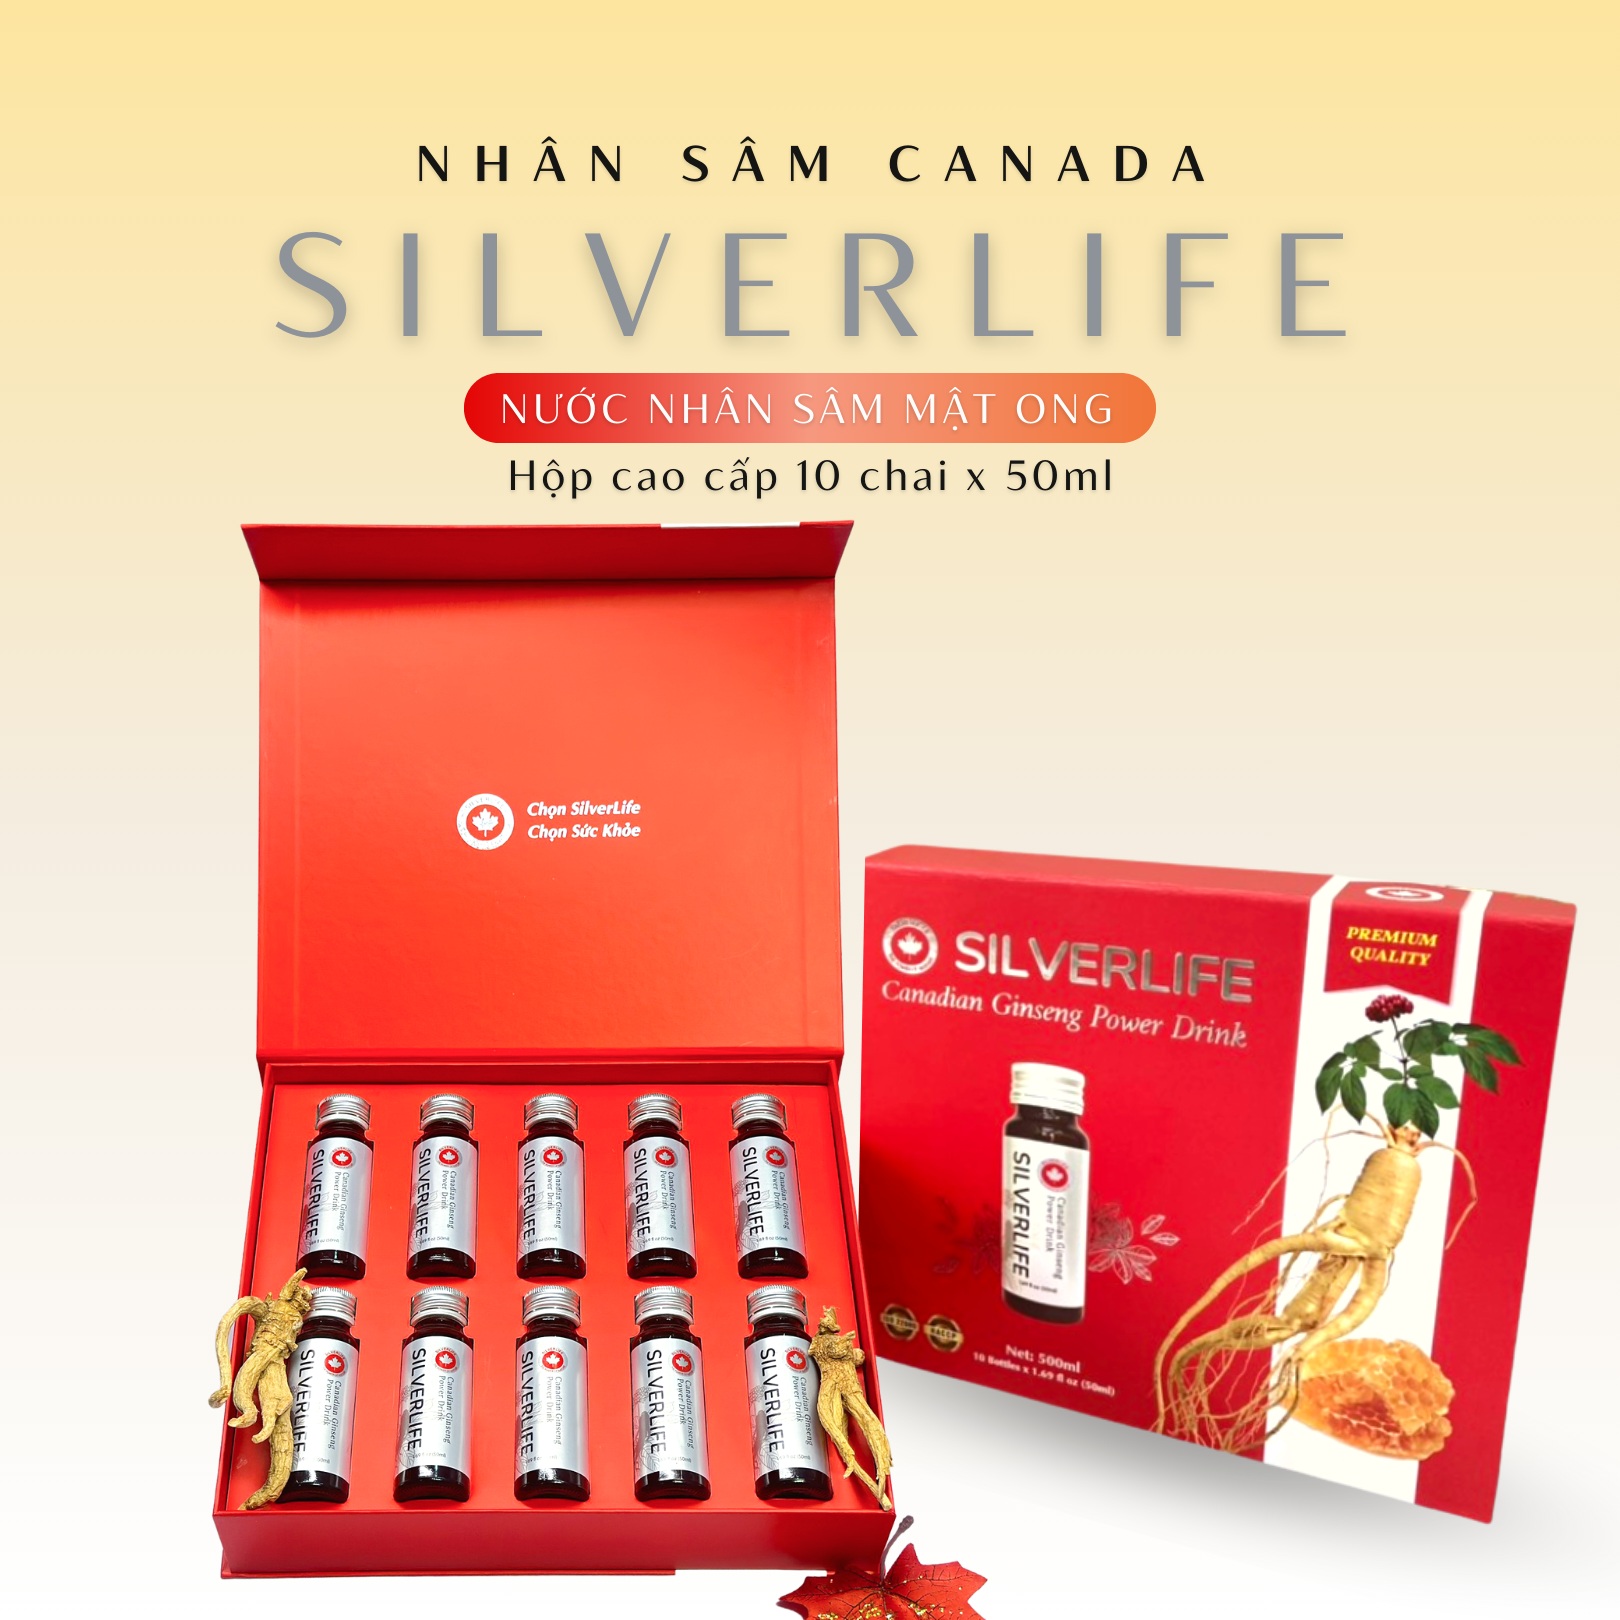 Nước uống tinh chất nhân sâm Canada Silverlife | Từ 100% nhân sâm Canada chính gốc và mật ong nguyên chất